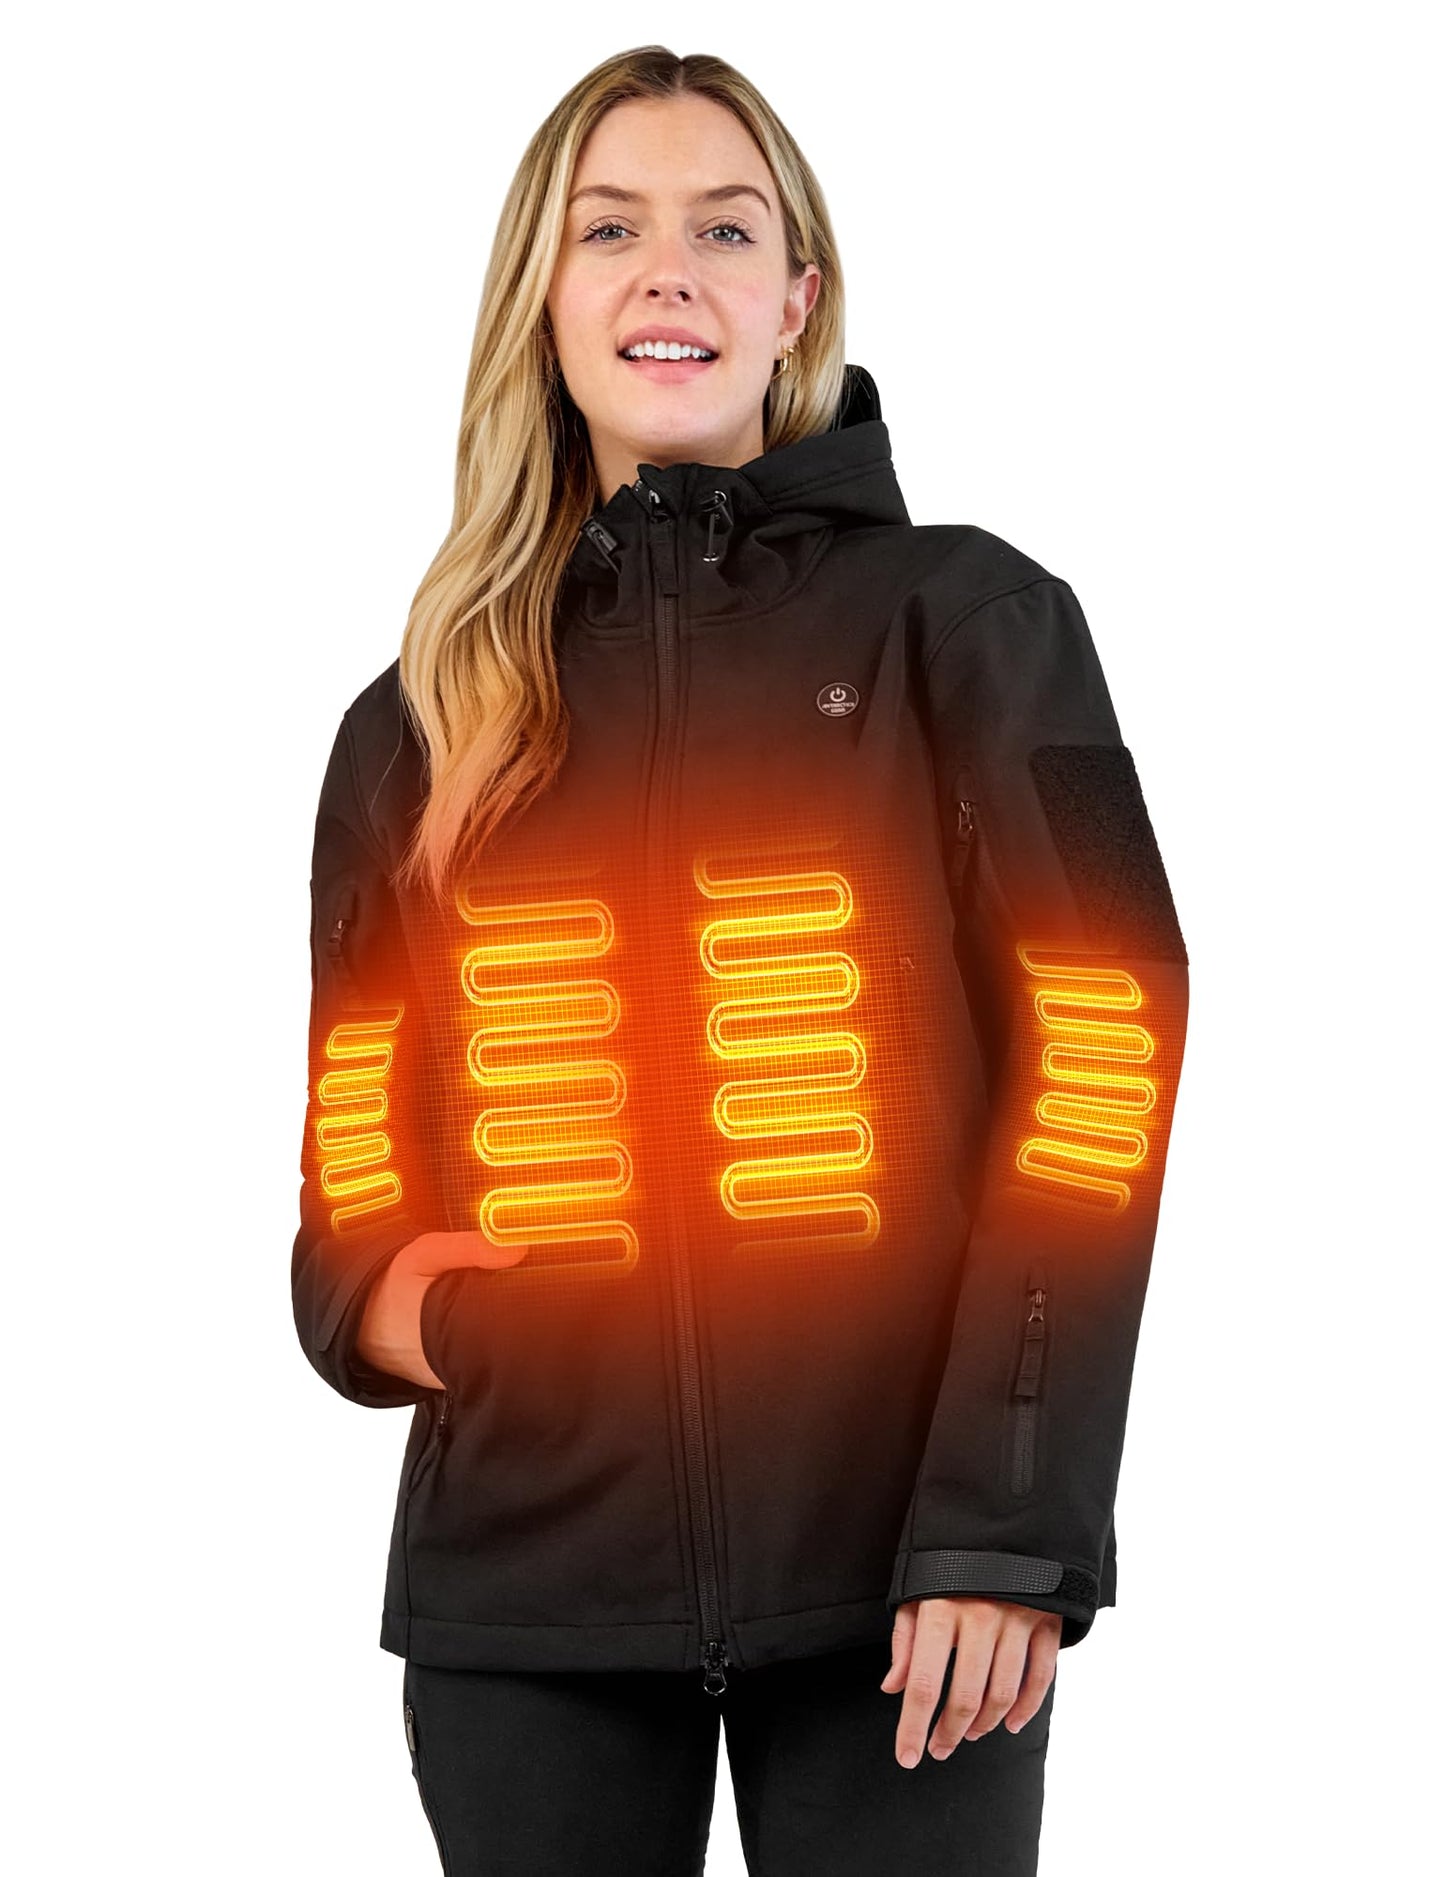 SV Antartic Softshell Heated Jacket